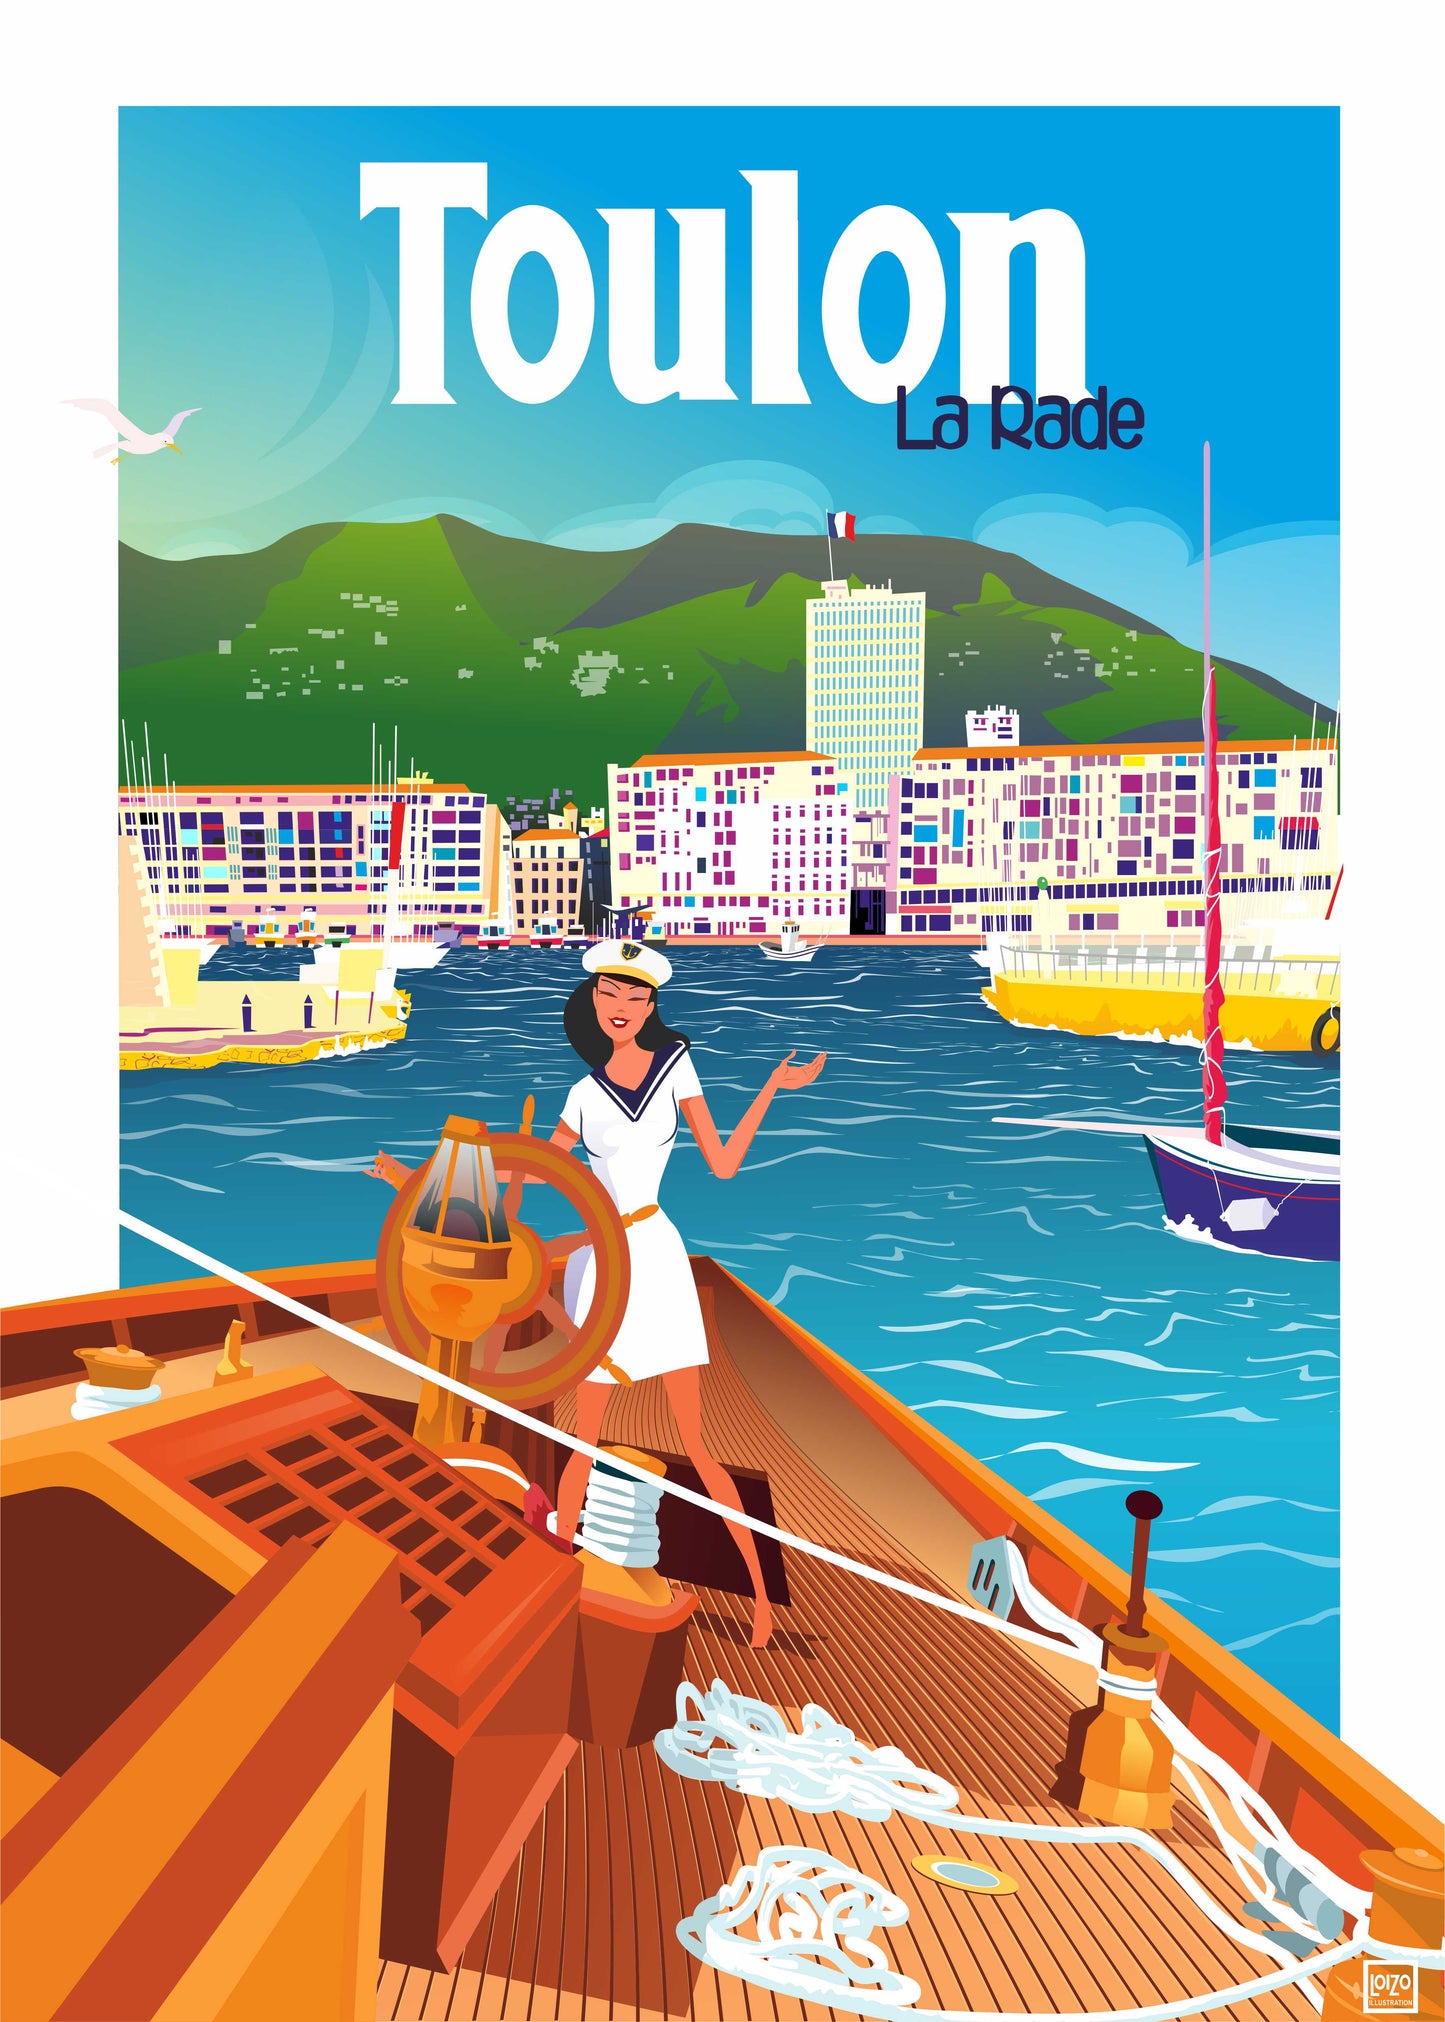 Toulon "La Rade"